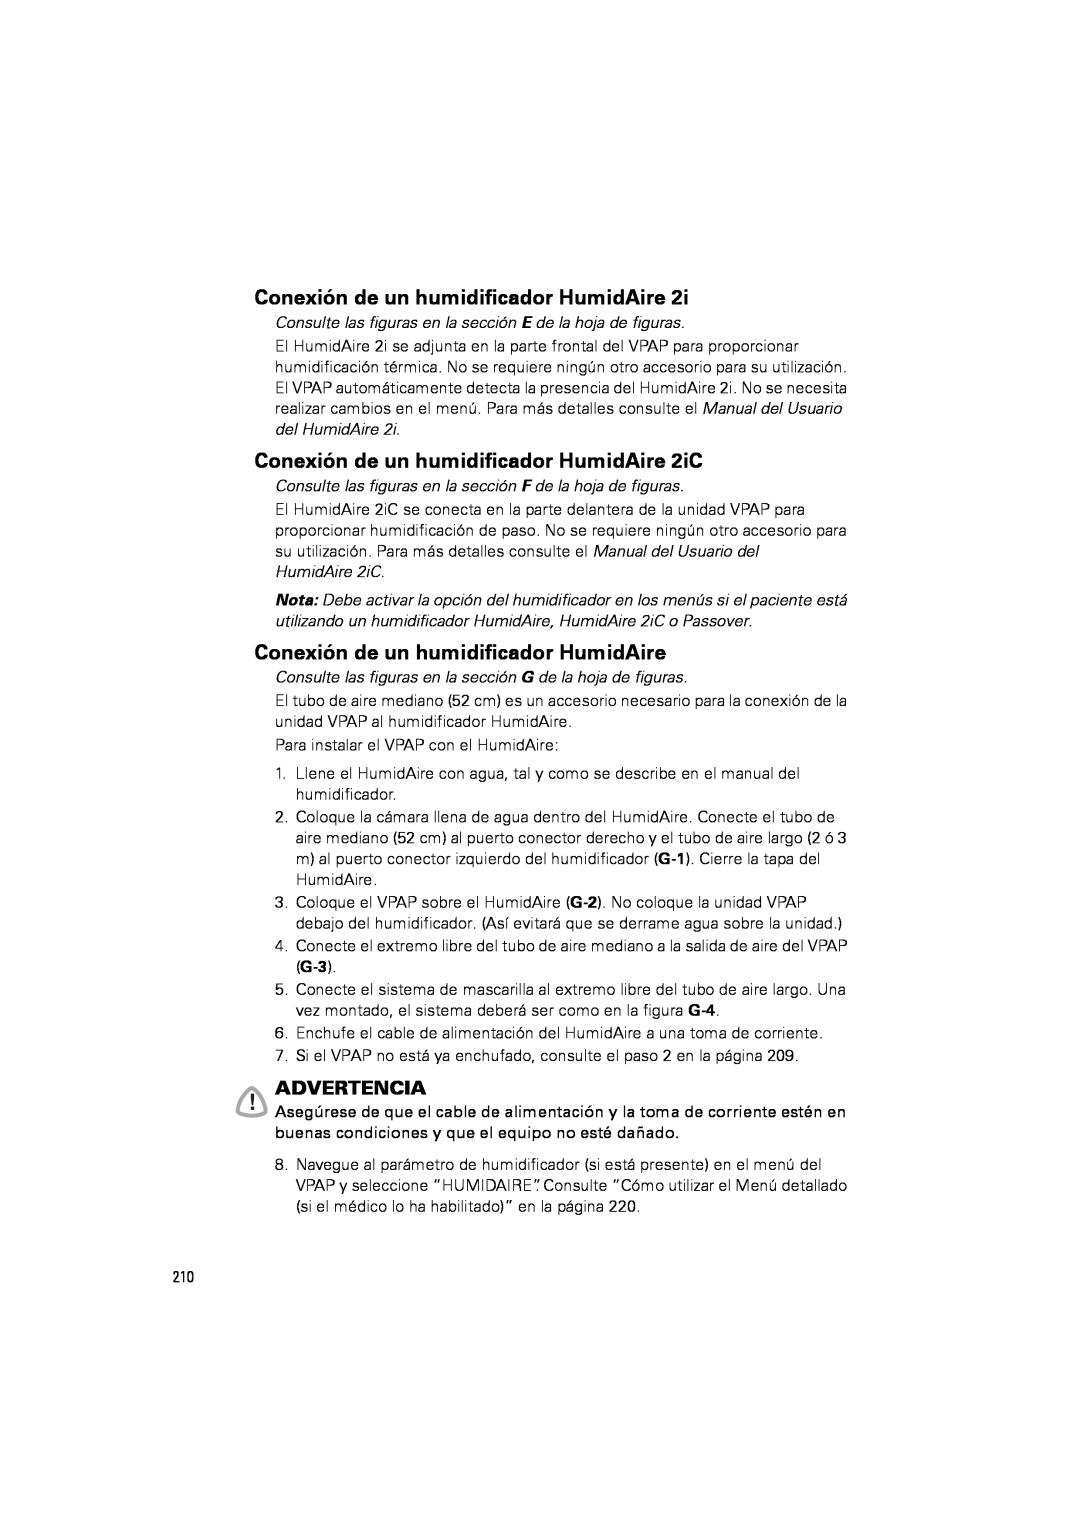 ResMed III & III ST user manual Conexión de un humidificador HumidAire 2iC, Advertencia 